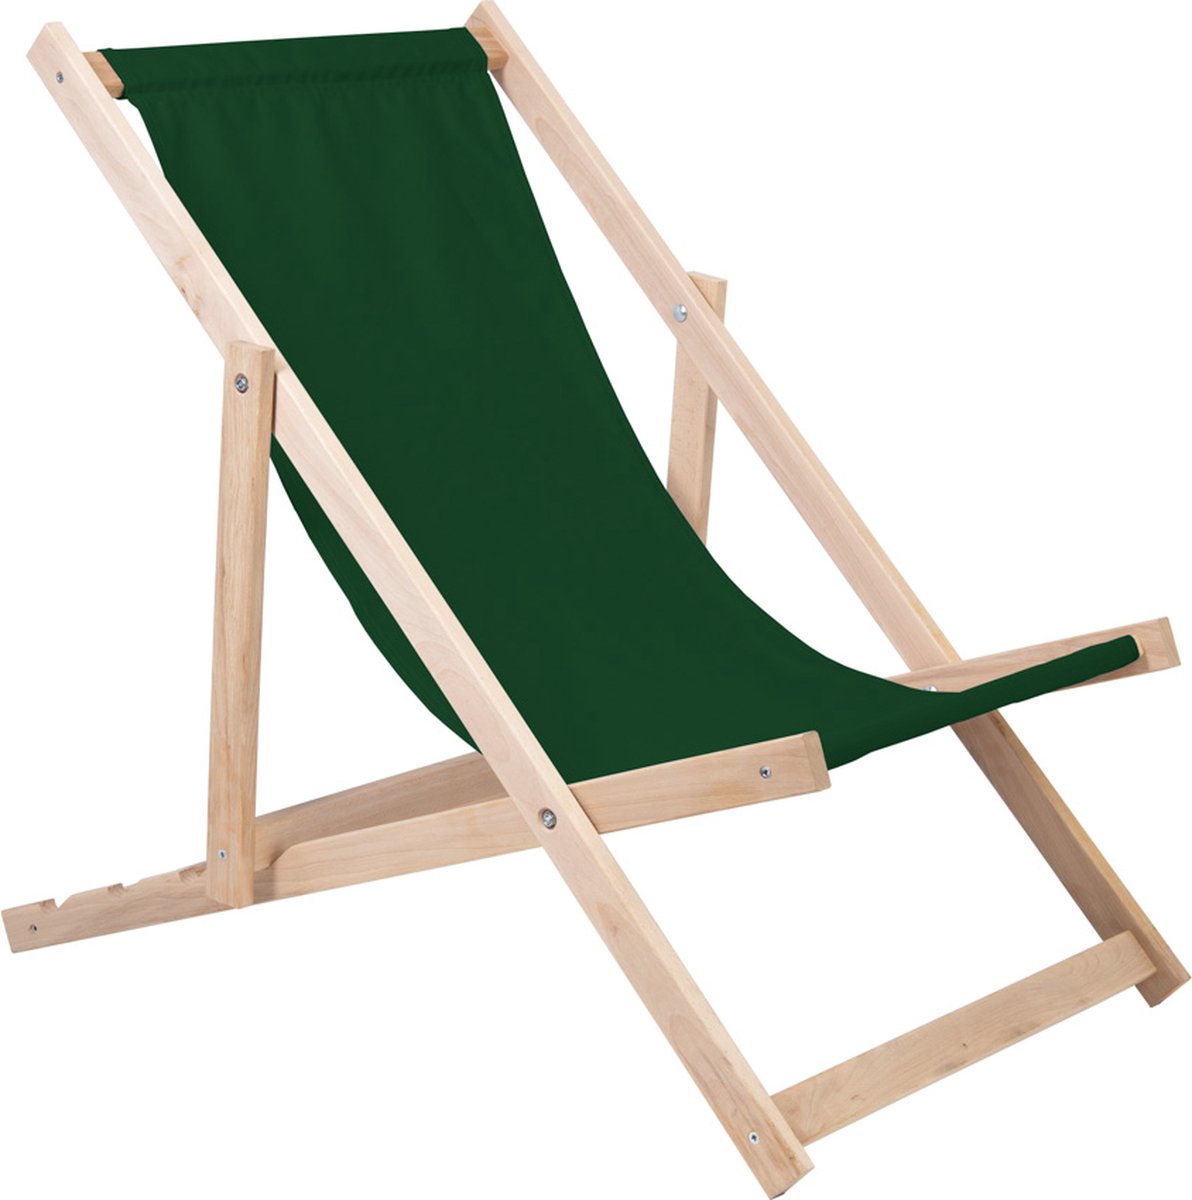 Holtaz Strandstoel Hout Inklapbaar Comfortabele Zonnebed Ligbed met verstelbare Lighoogte - groen